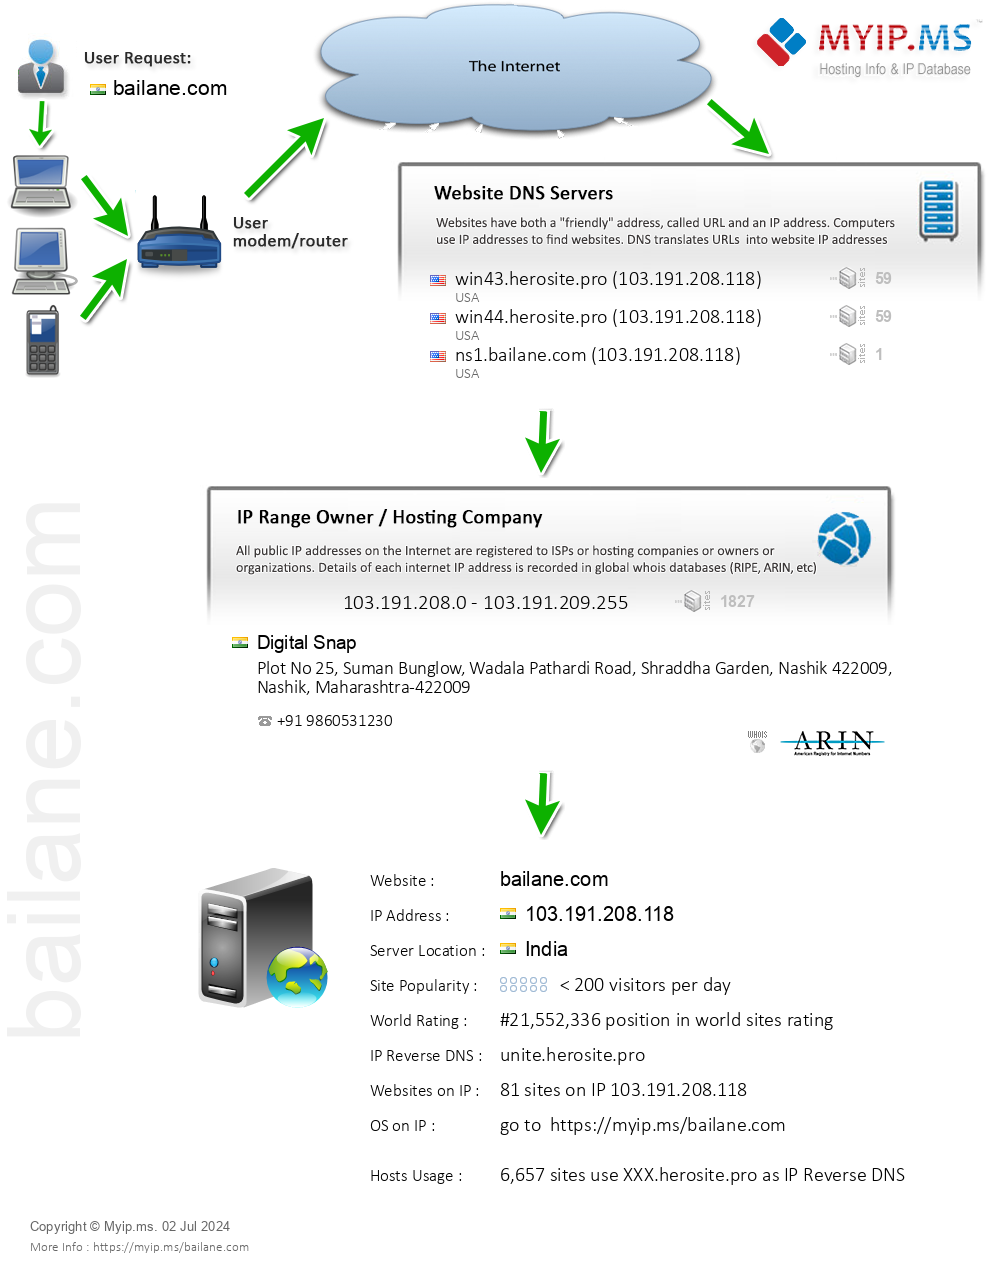 Bailane.com - Website Hosting Visual IP Diagram